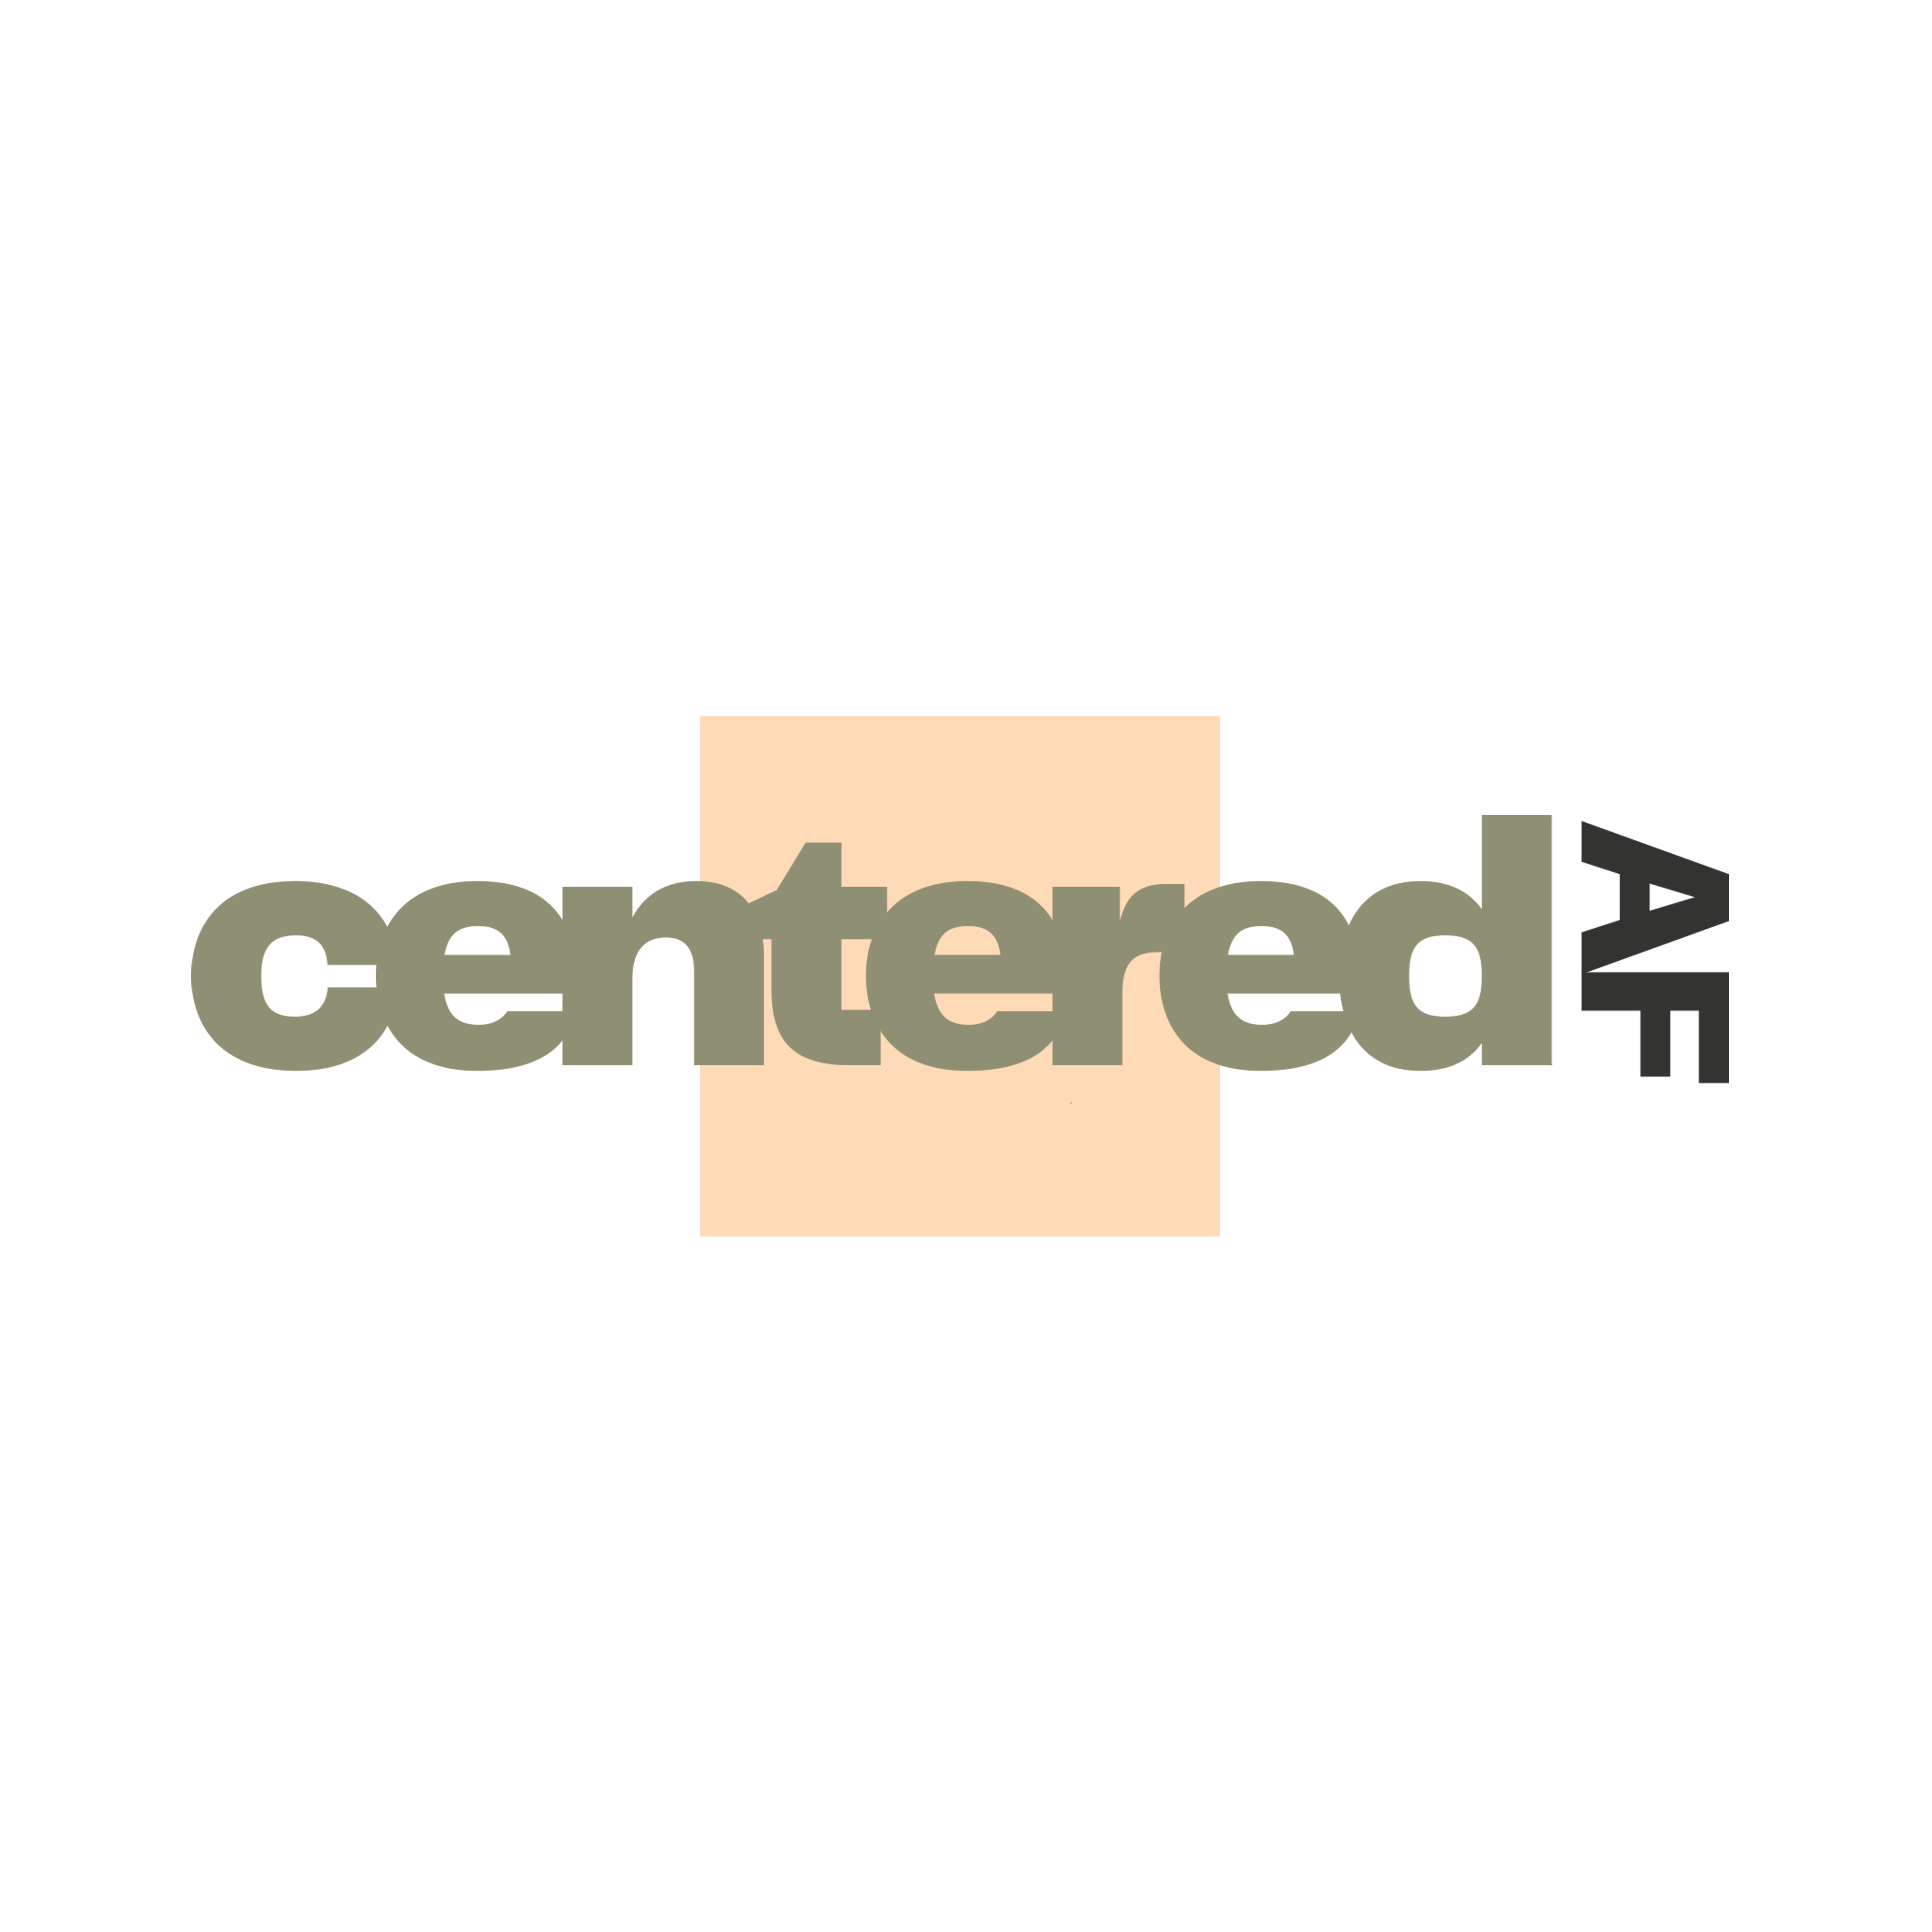 Centered AF